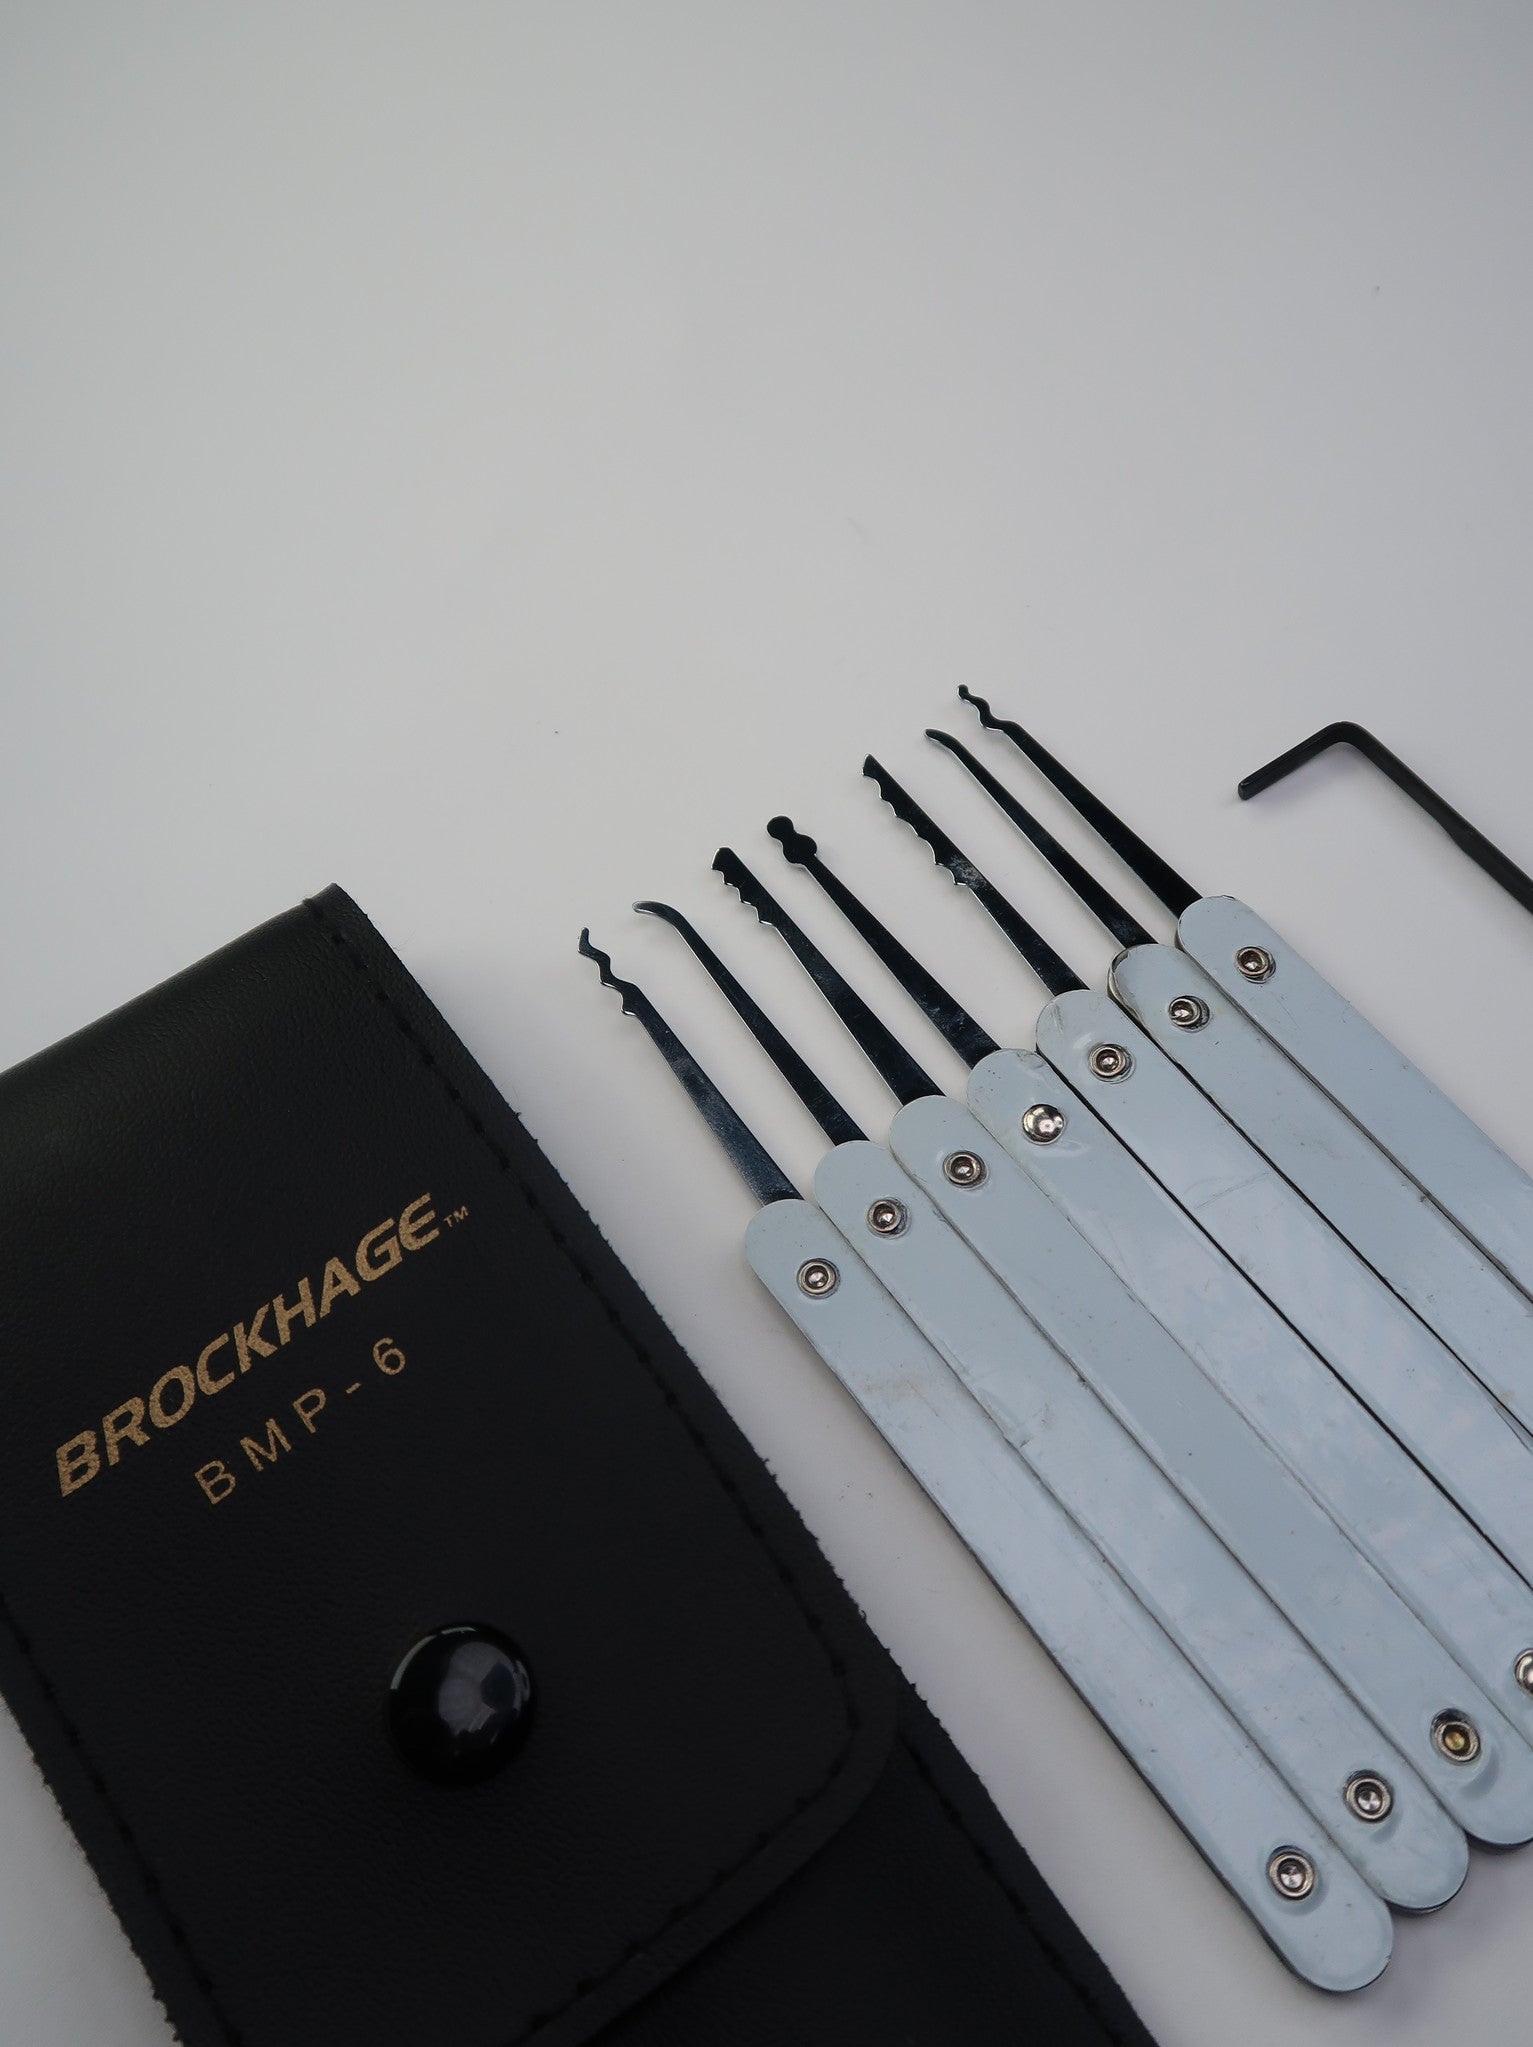 Brockhage lockpick set (8-delig) beginnersset